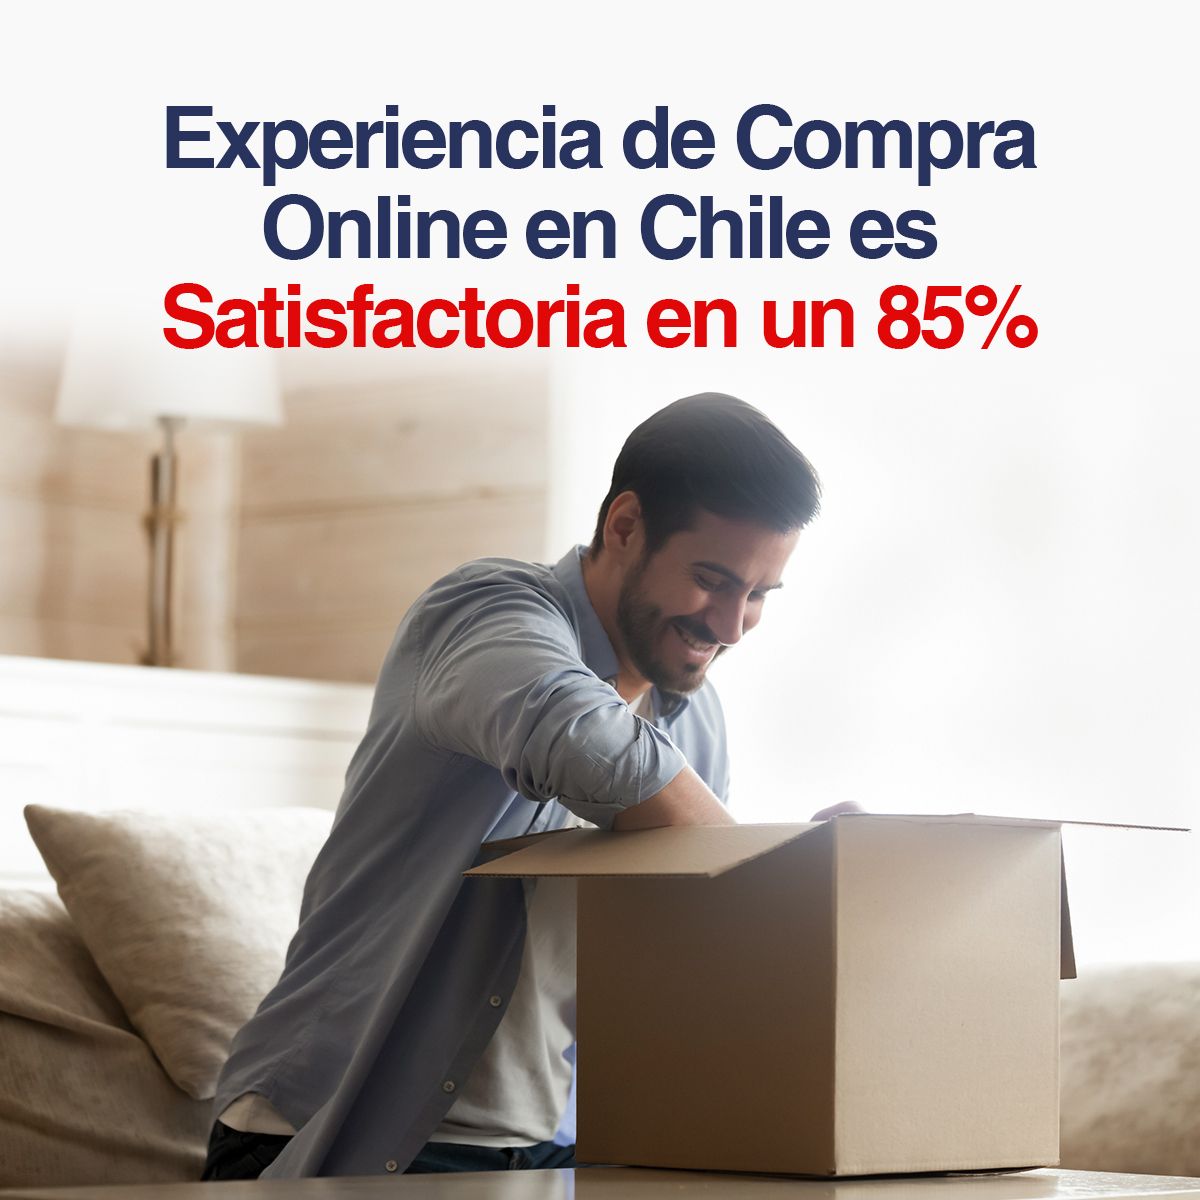 Experiencia de Compra Online en Chile es Satisfactoria en un 85%